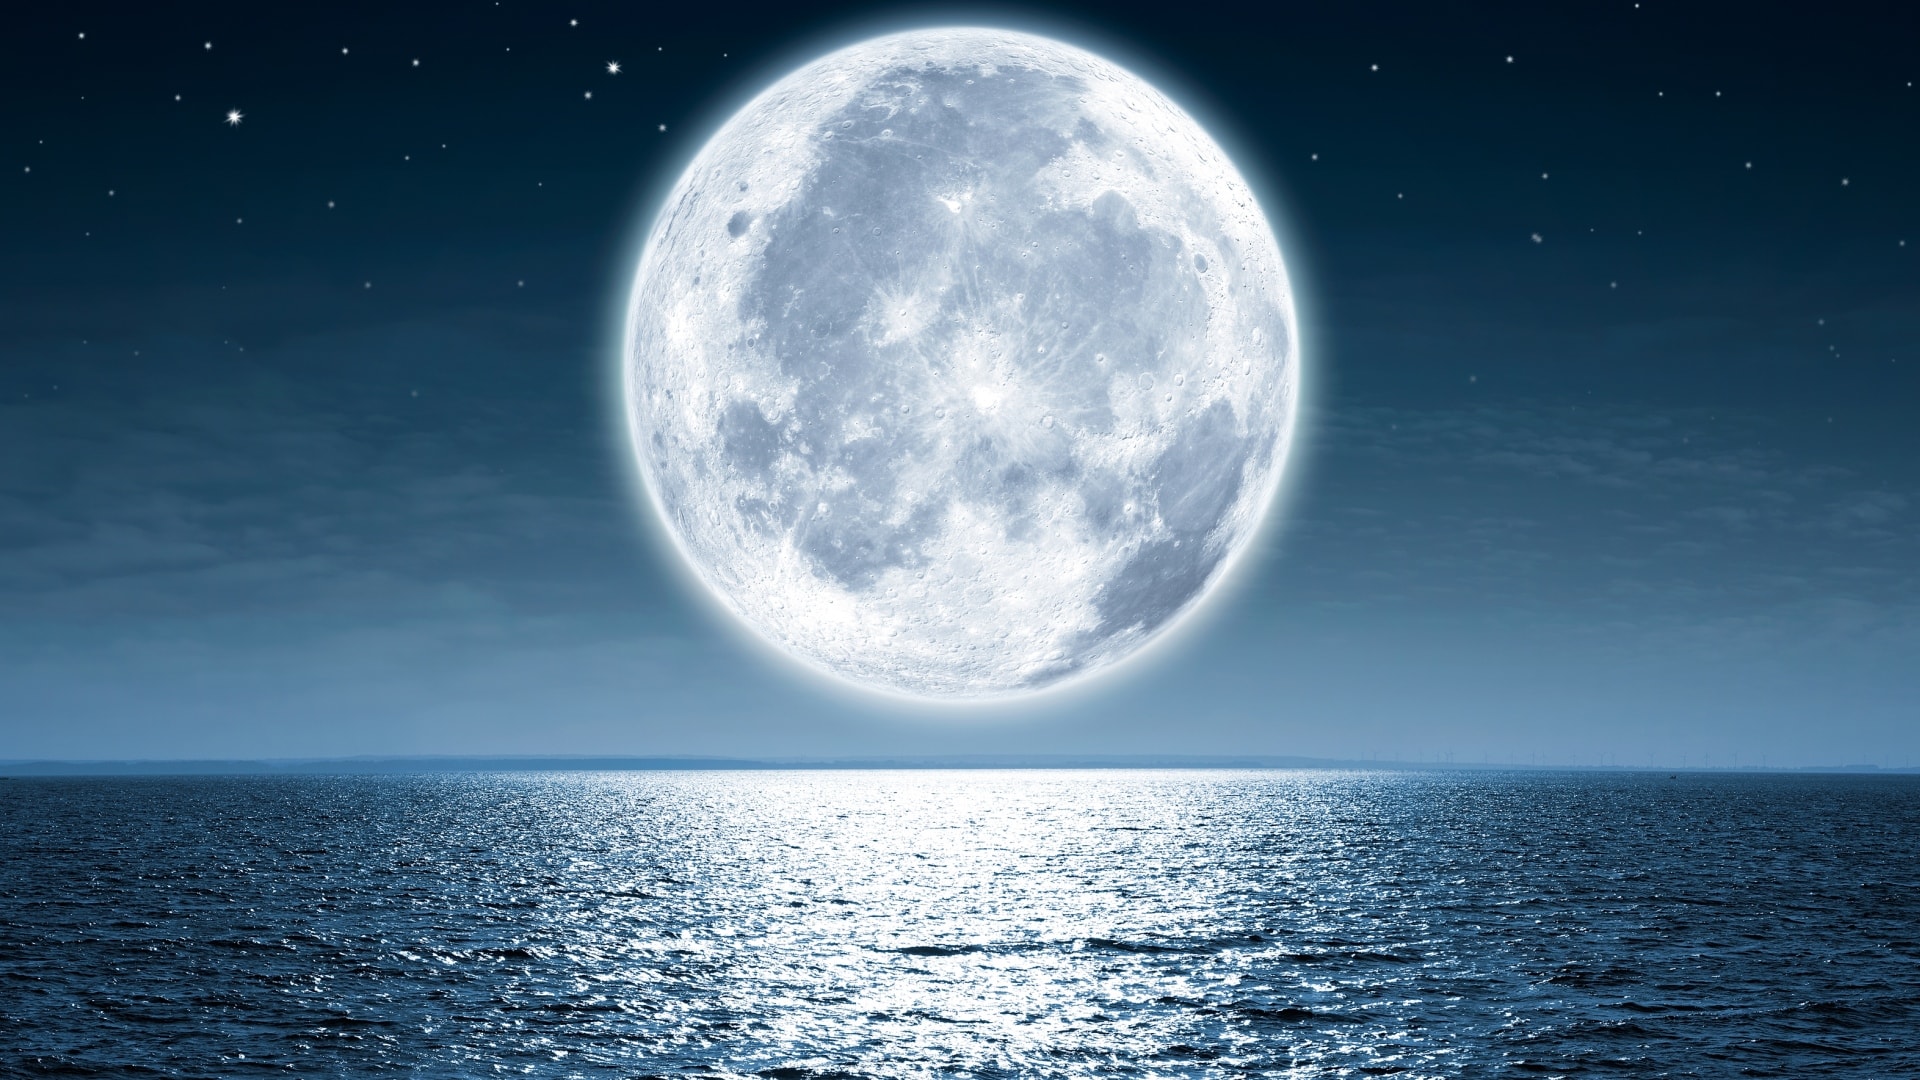 Potvrzení přítomnosti vody na Měsící je pro nás nesmírně důležité.